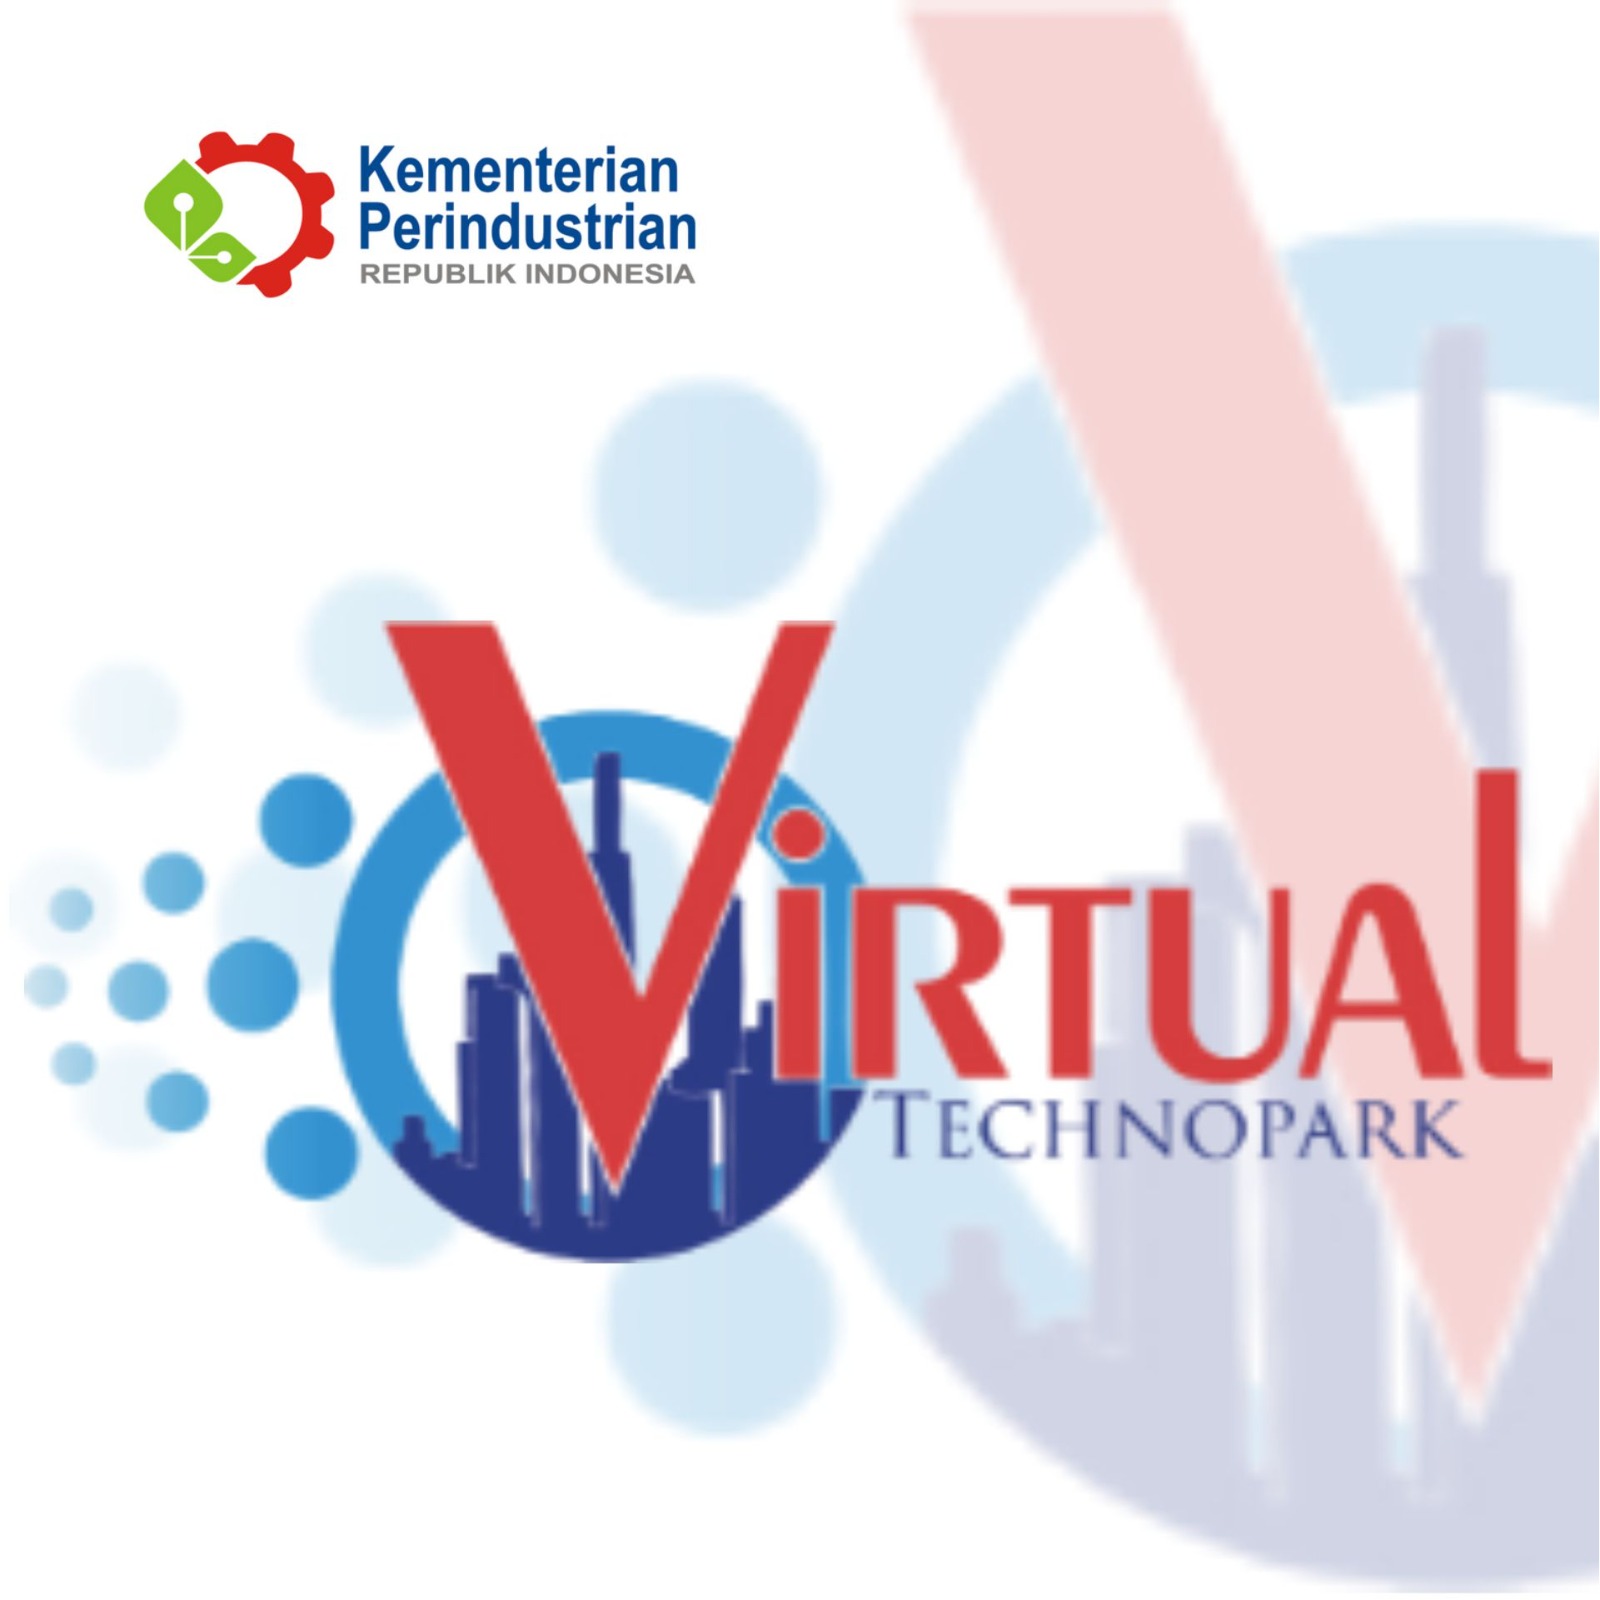 https://virtualtechnopark.kemenperin.go.id/Virtual Technopark Kemenperin